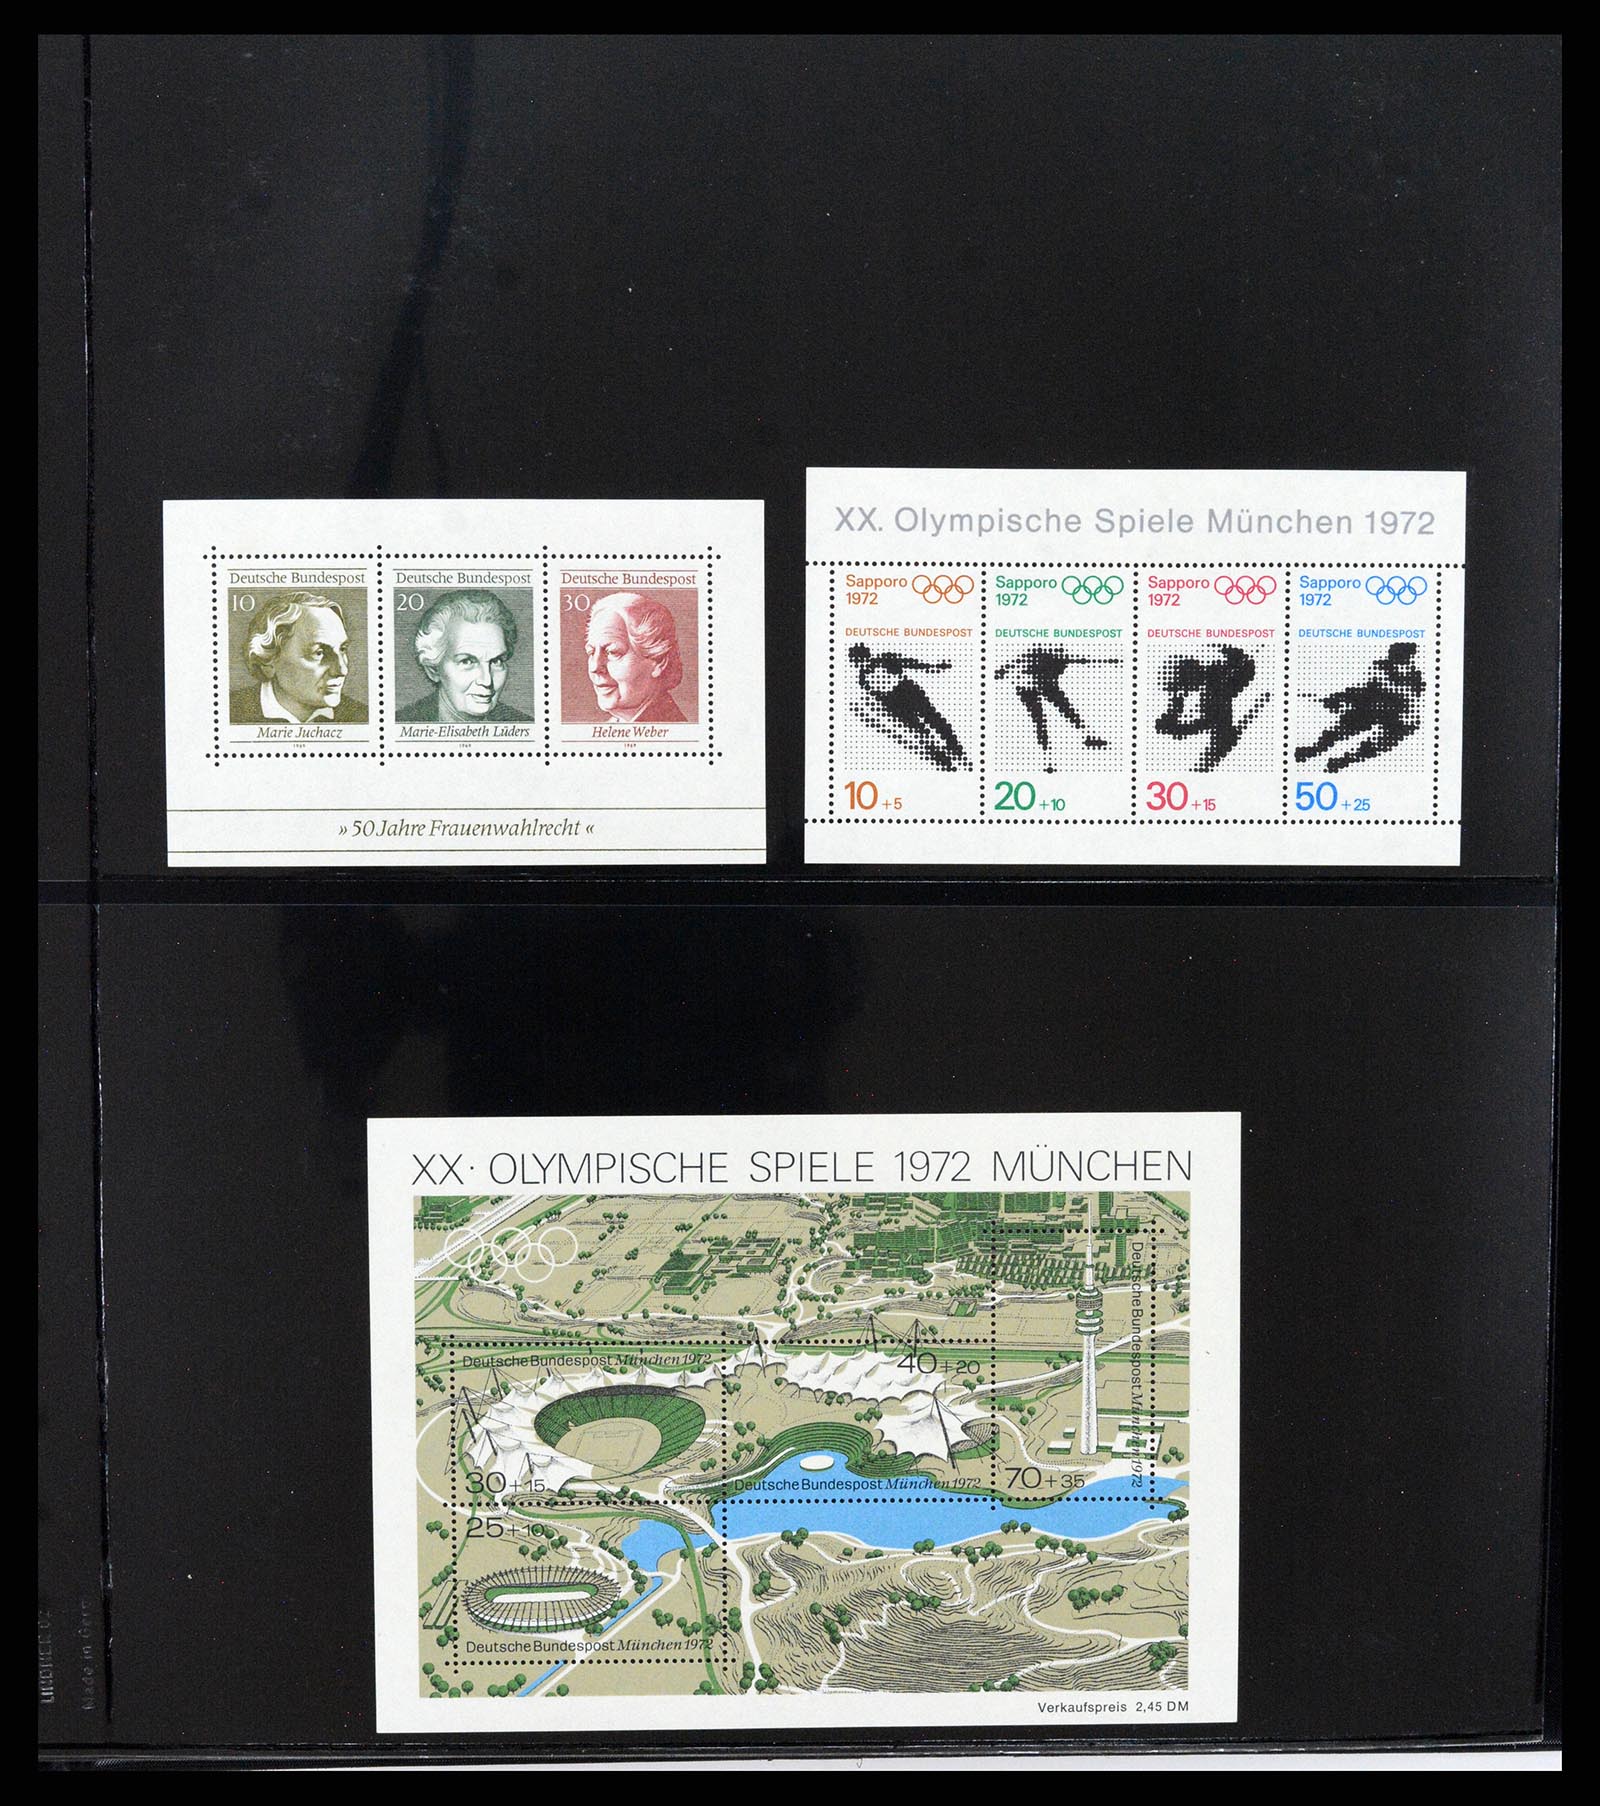 37345 033 - Stamp collection 37345 European countries souvenir sheets.